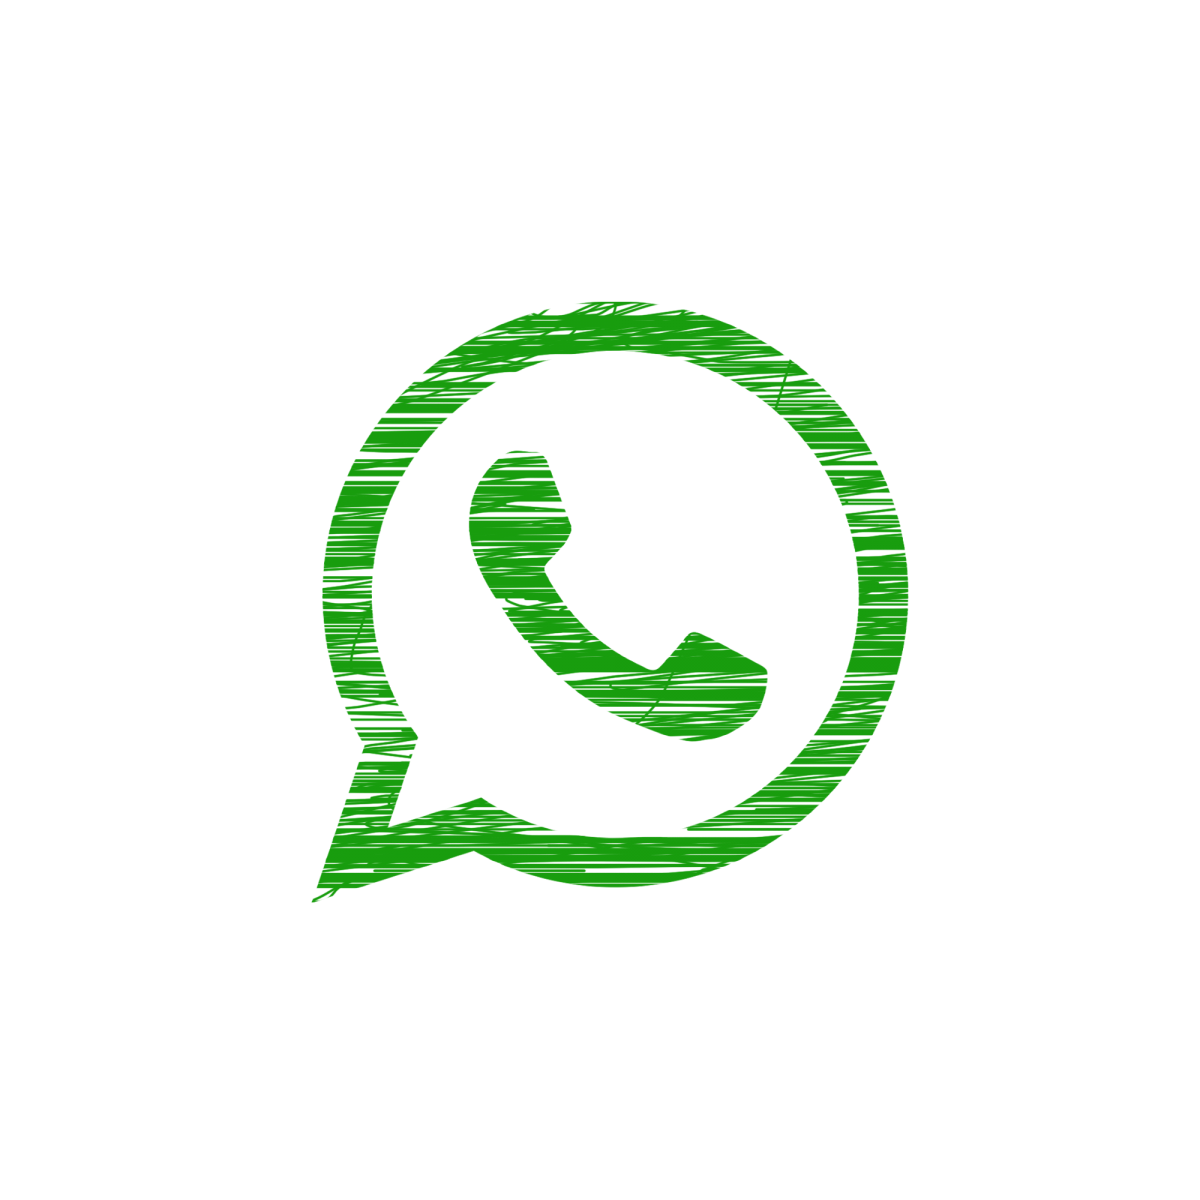 whatsapp dejará de funcionar imagen logo desvaneciéndose